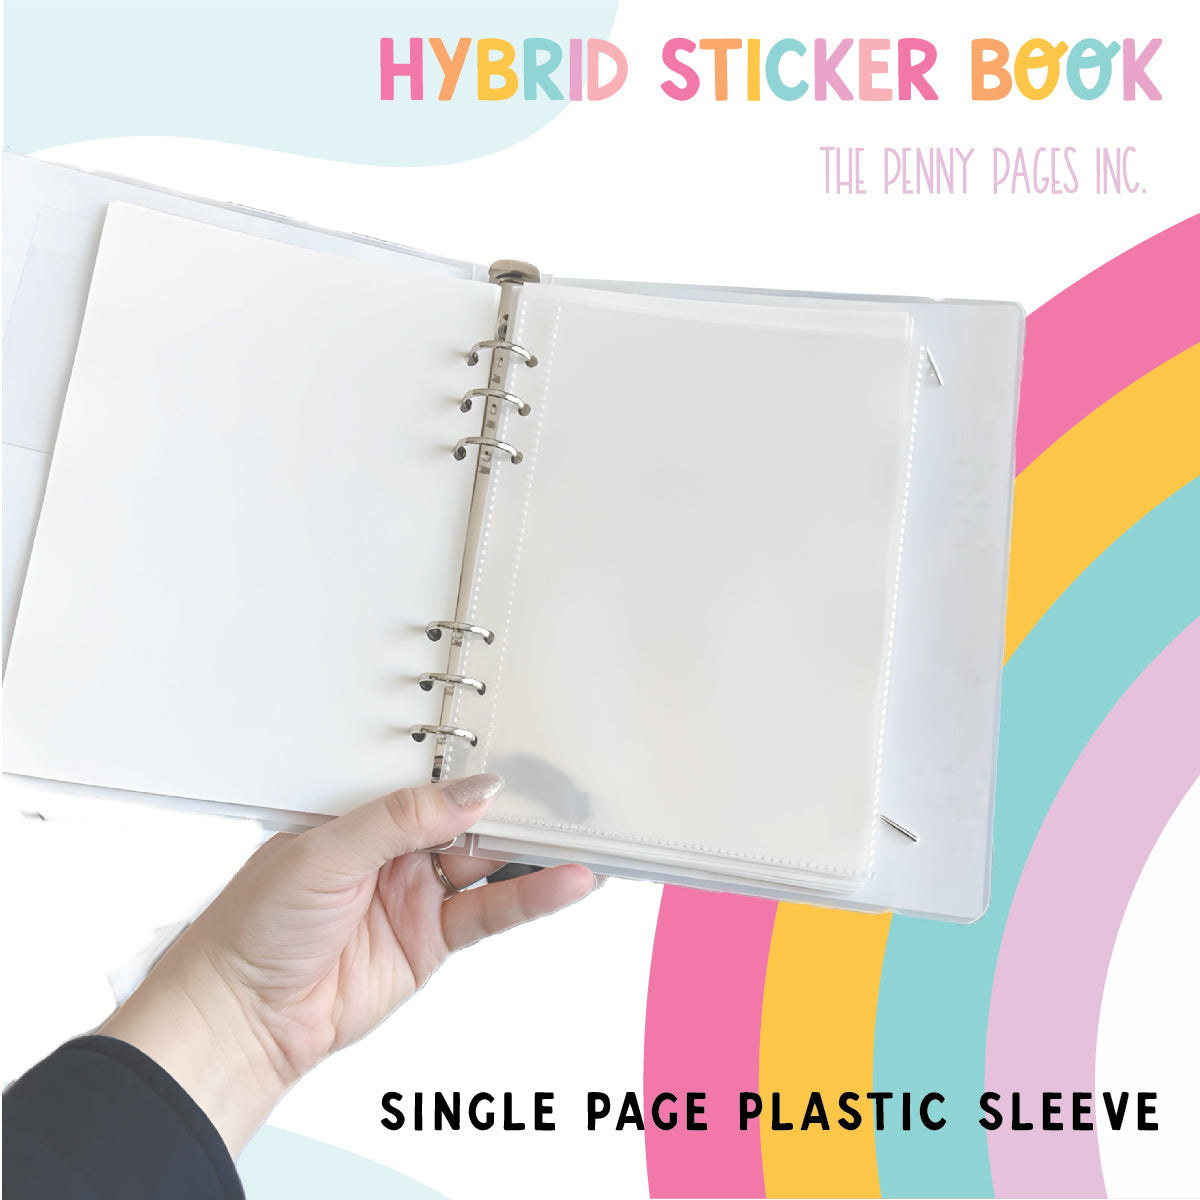 Wild Flowers - Hybrid Sticker Book